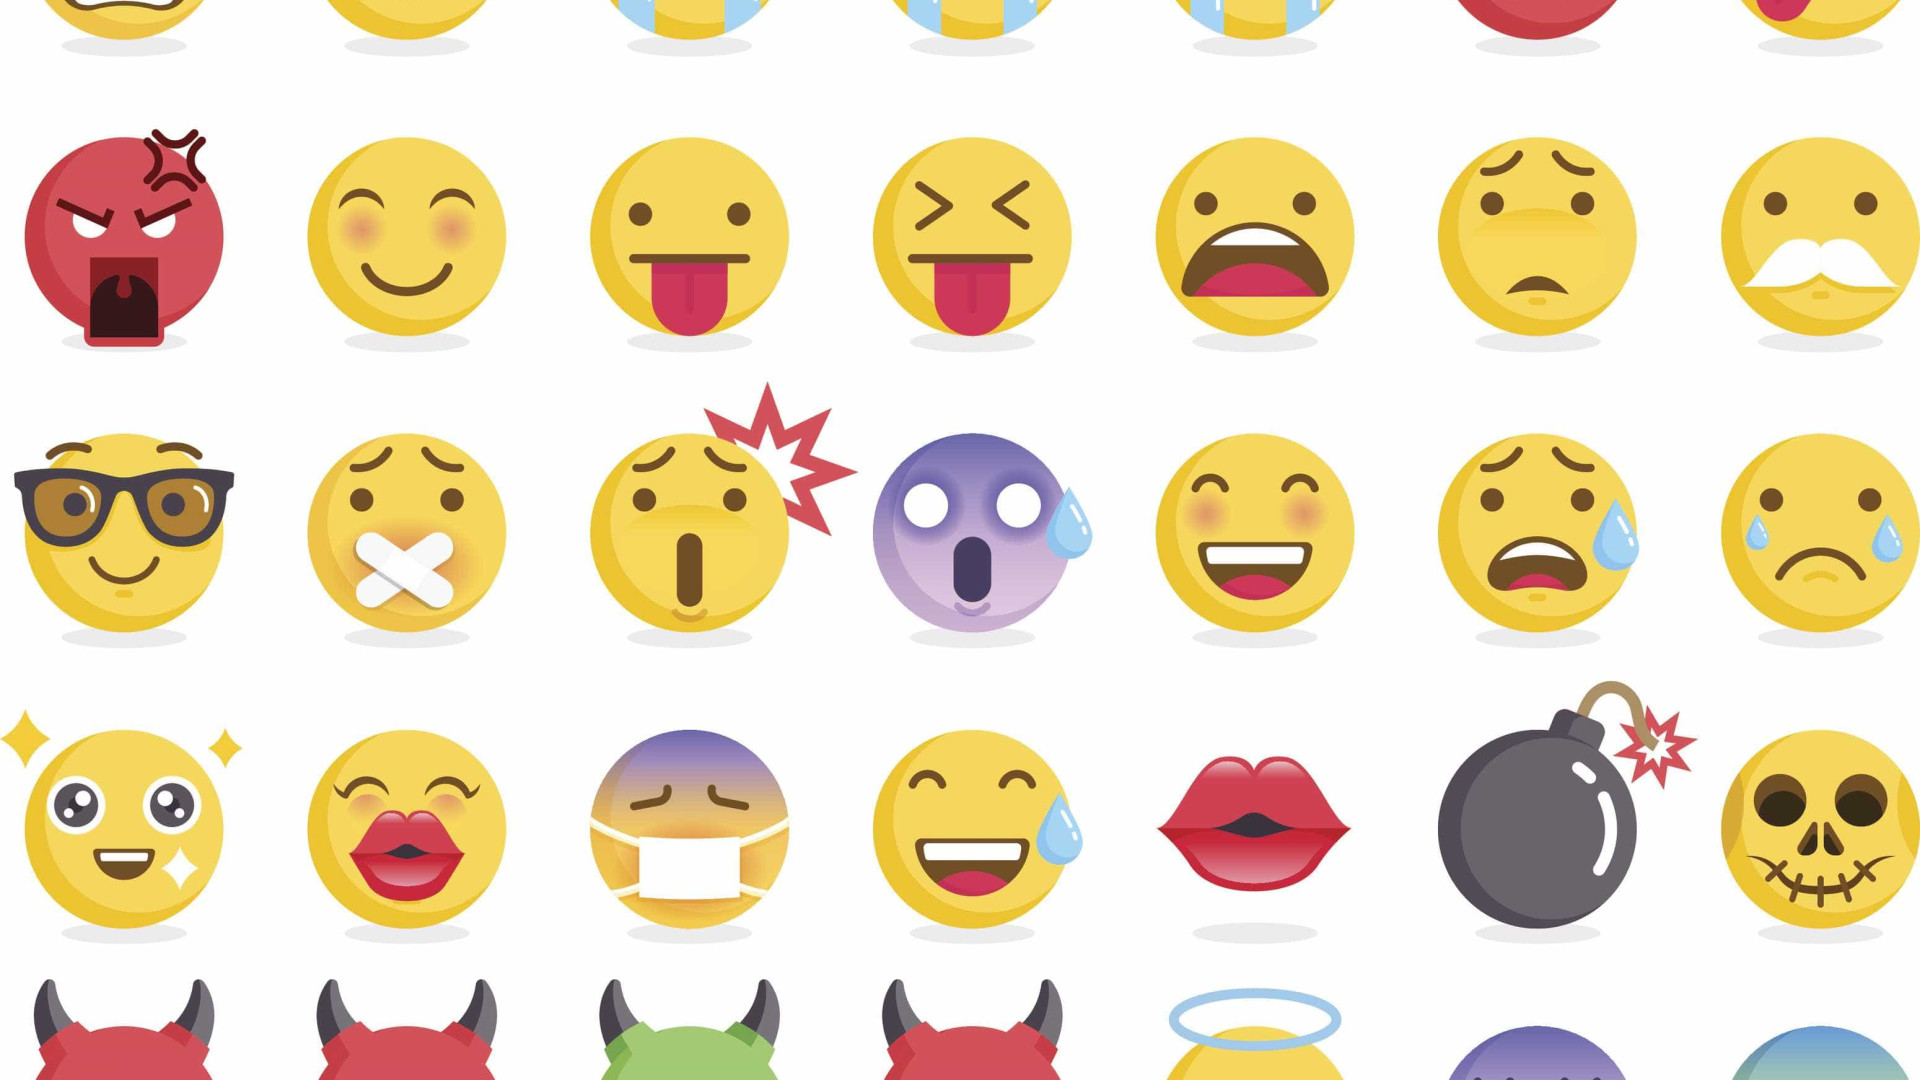 Facebook revela emojis mais usados no mundo; confira